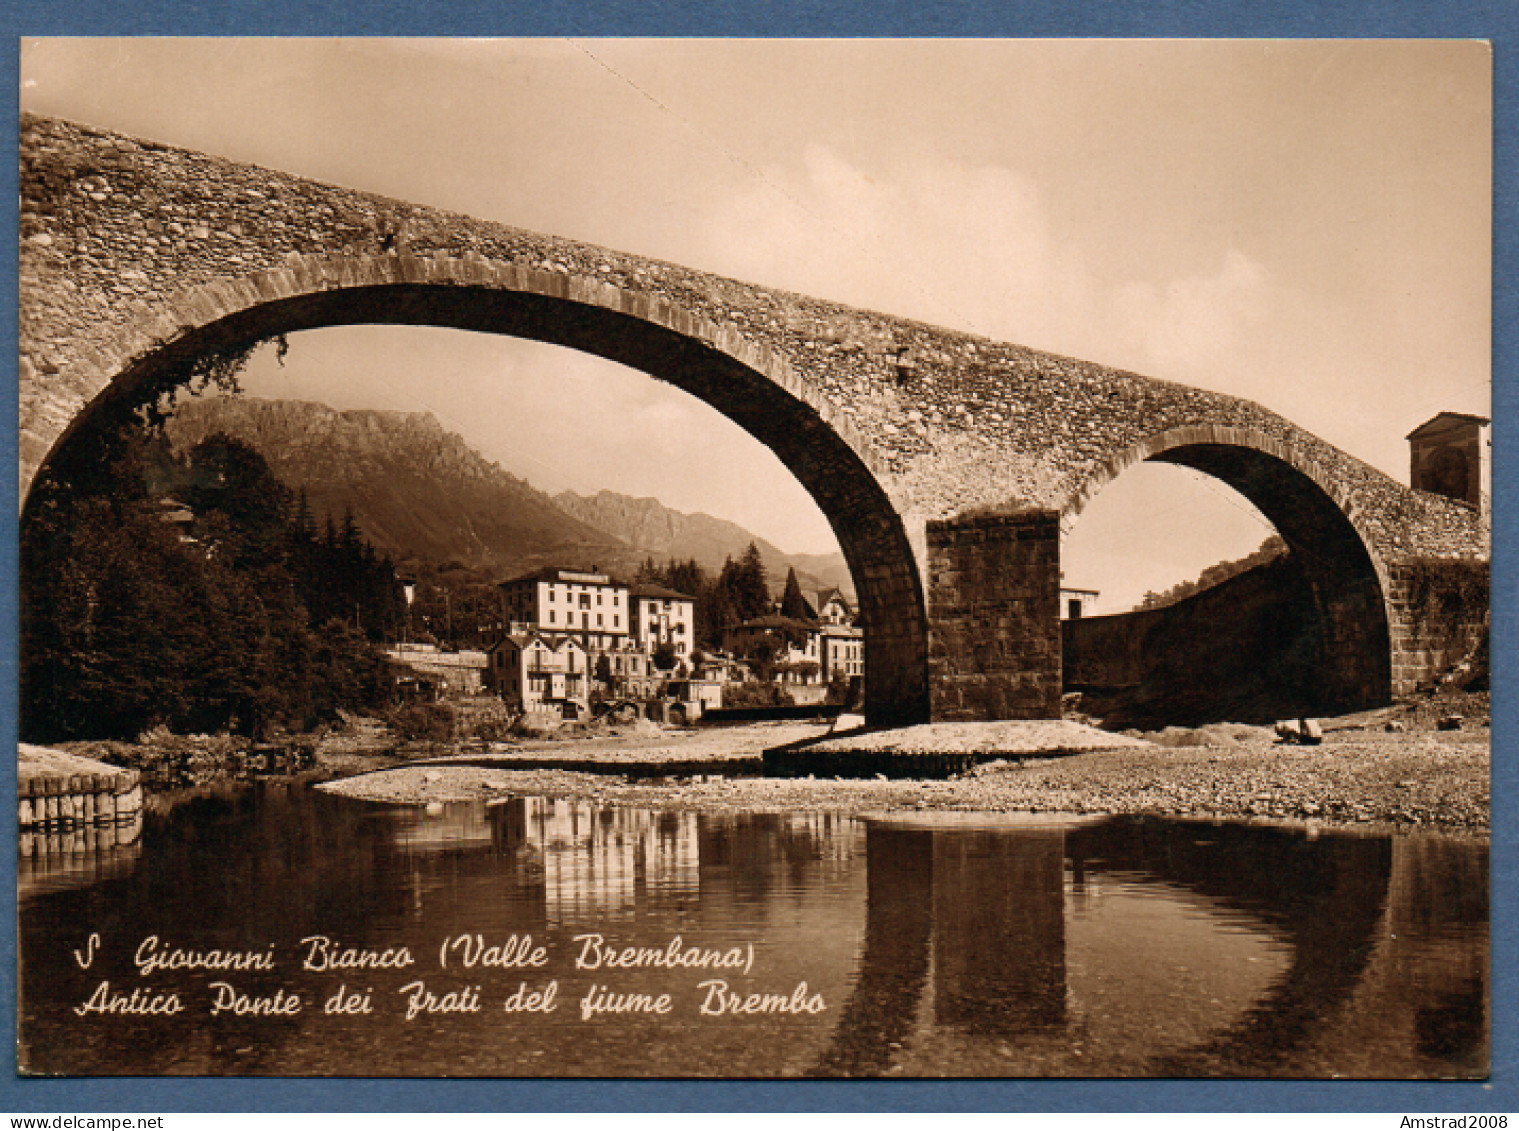 1950 - SAN GIOVANNI BIANCO -VALLE BREMBANA - ANTICO PONTE DEI FRATI DEL FIUME BREMBO - ITALIE - Bergamo